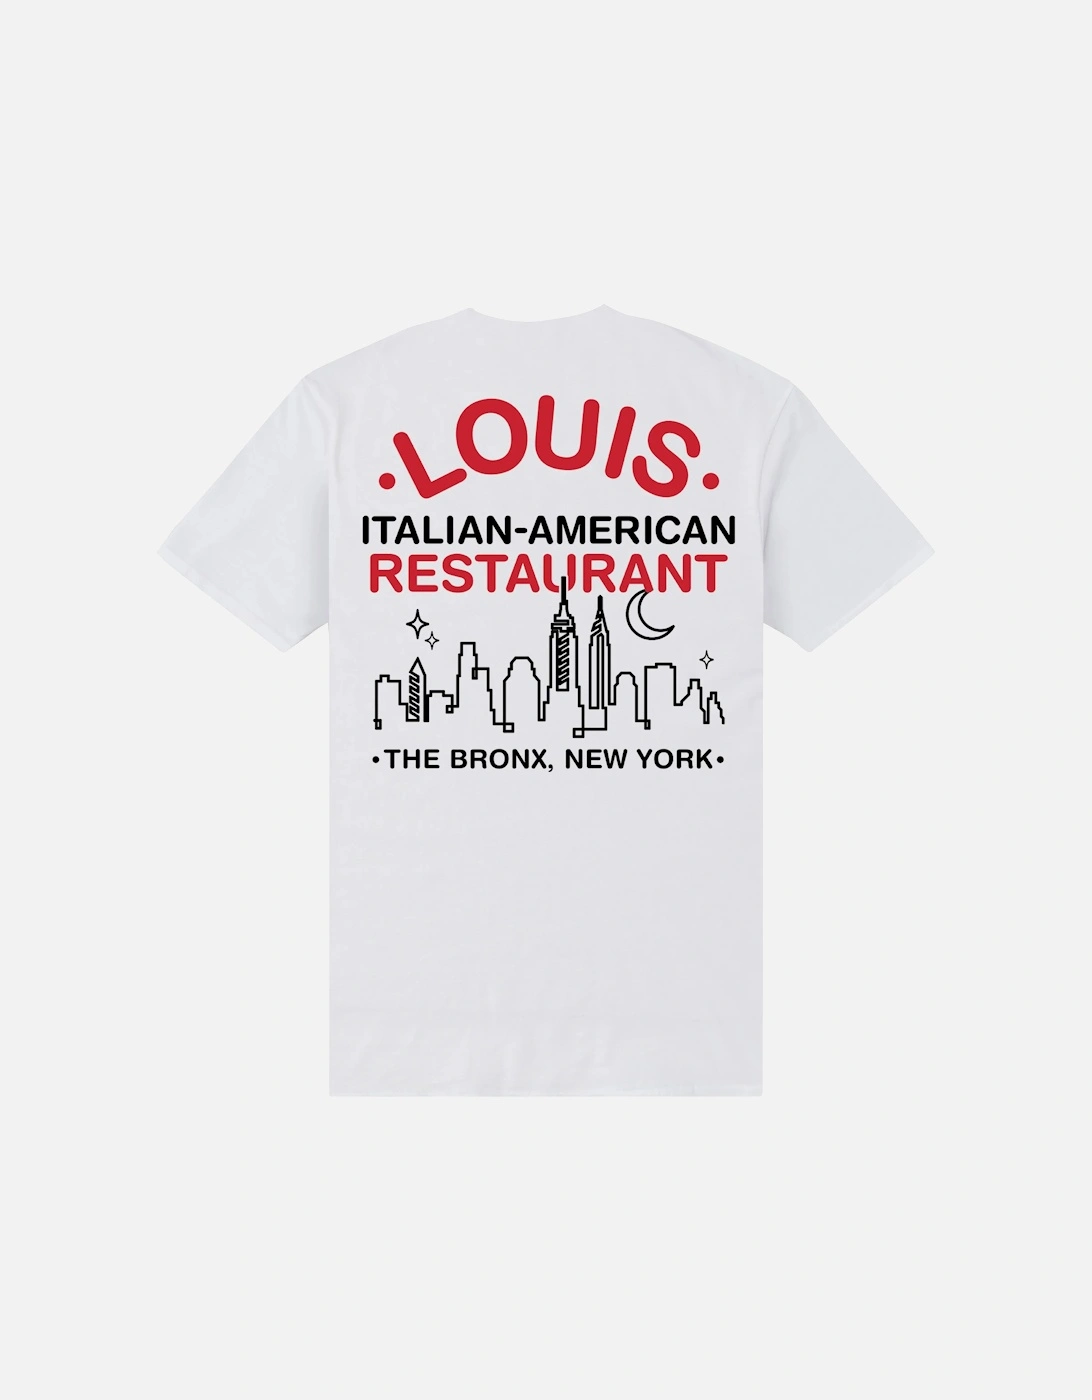 Unisex Adult Louis Restaurant T-Shirt